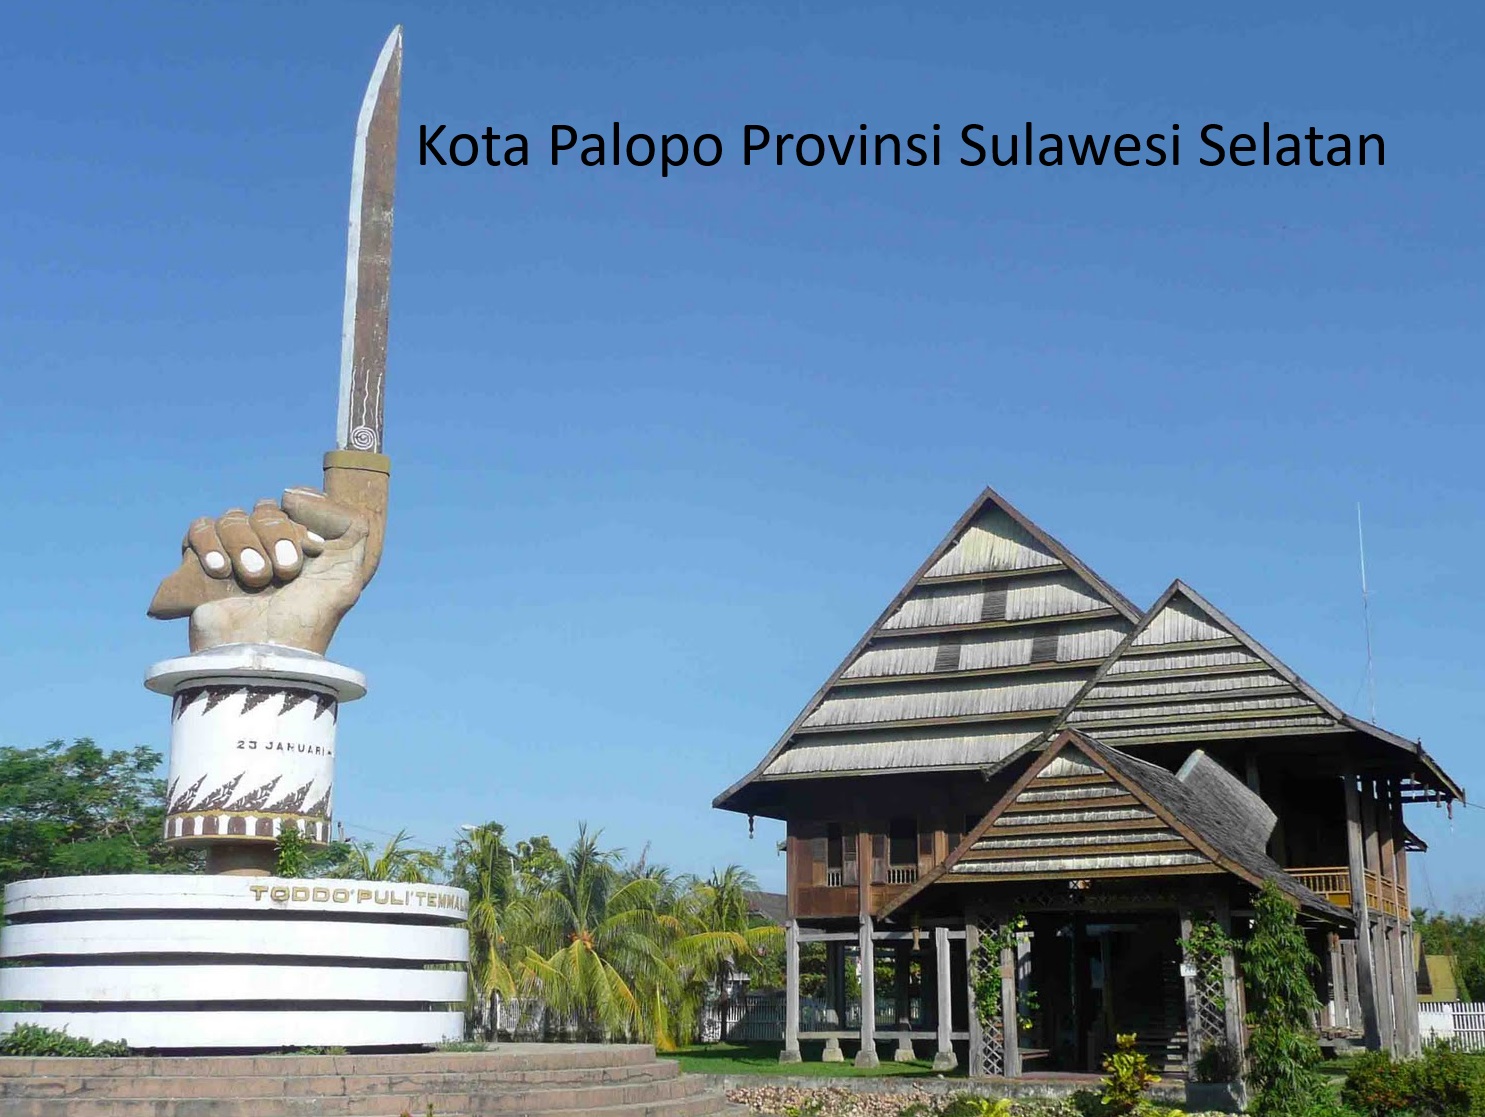 Kota Palopo Provinsi Sulawesi Selatan: Sejarah dan Potensi Sebagai Ibukota Provinsi Luwu Raya